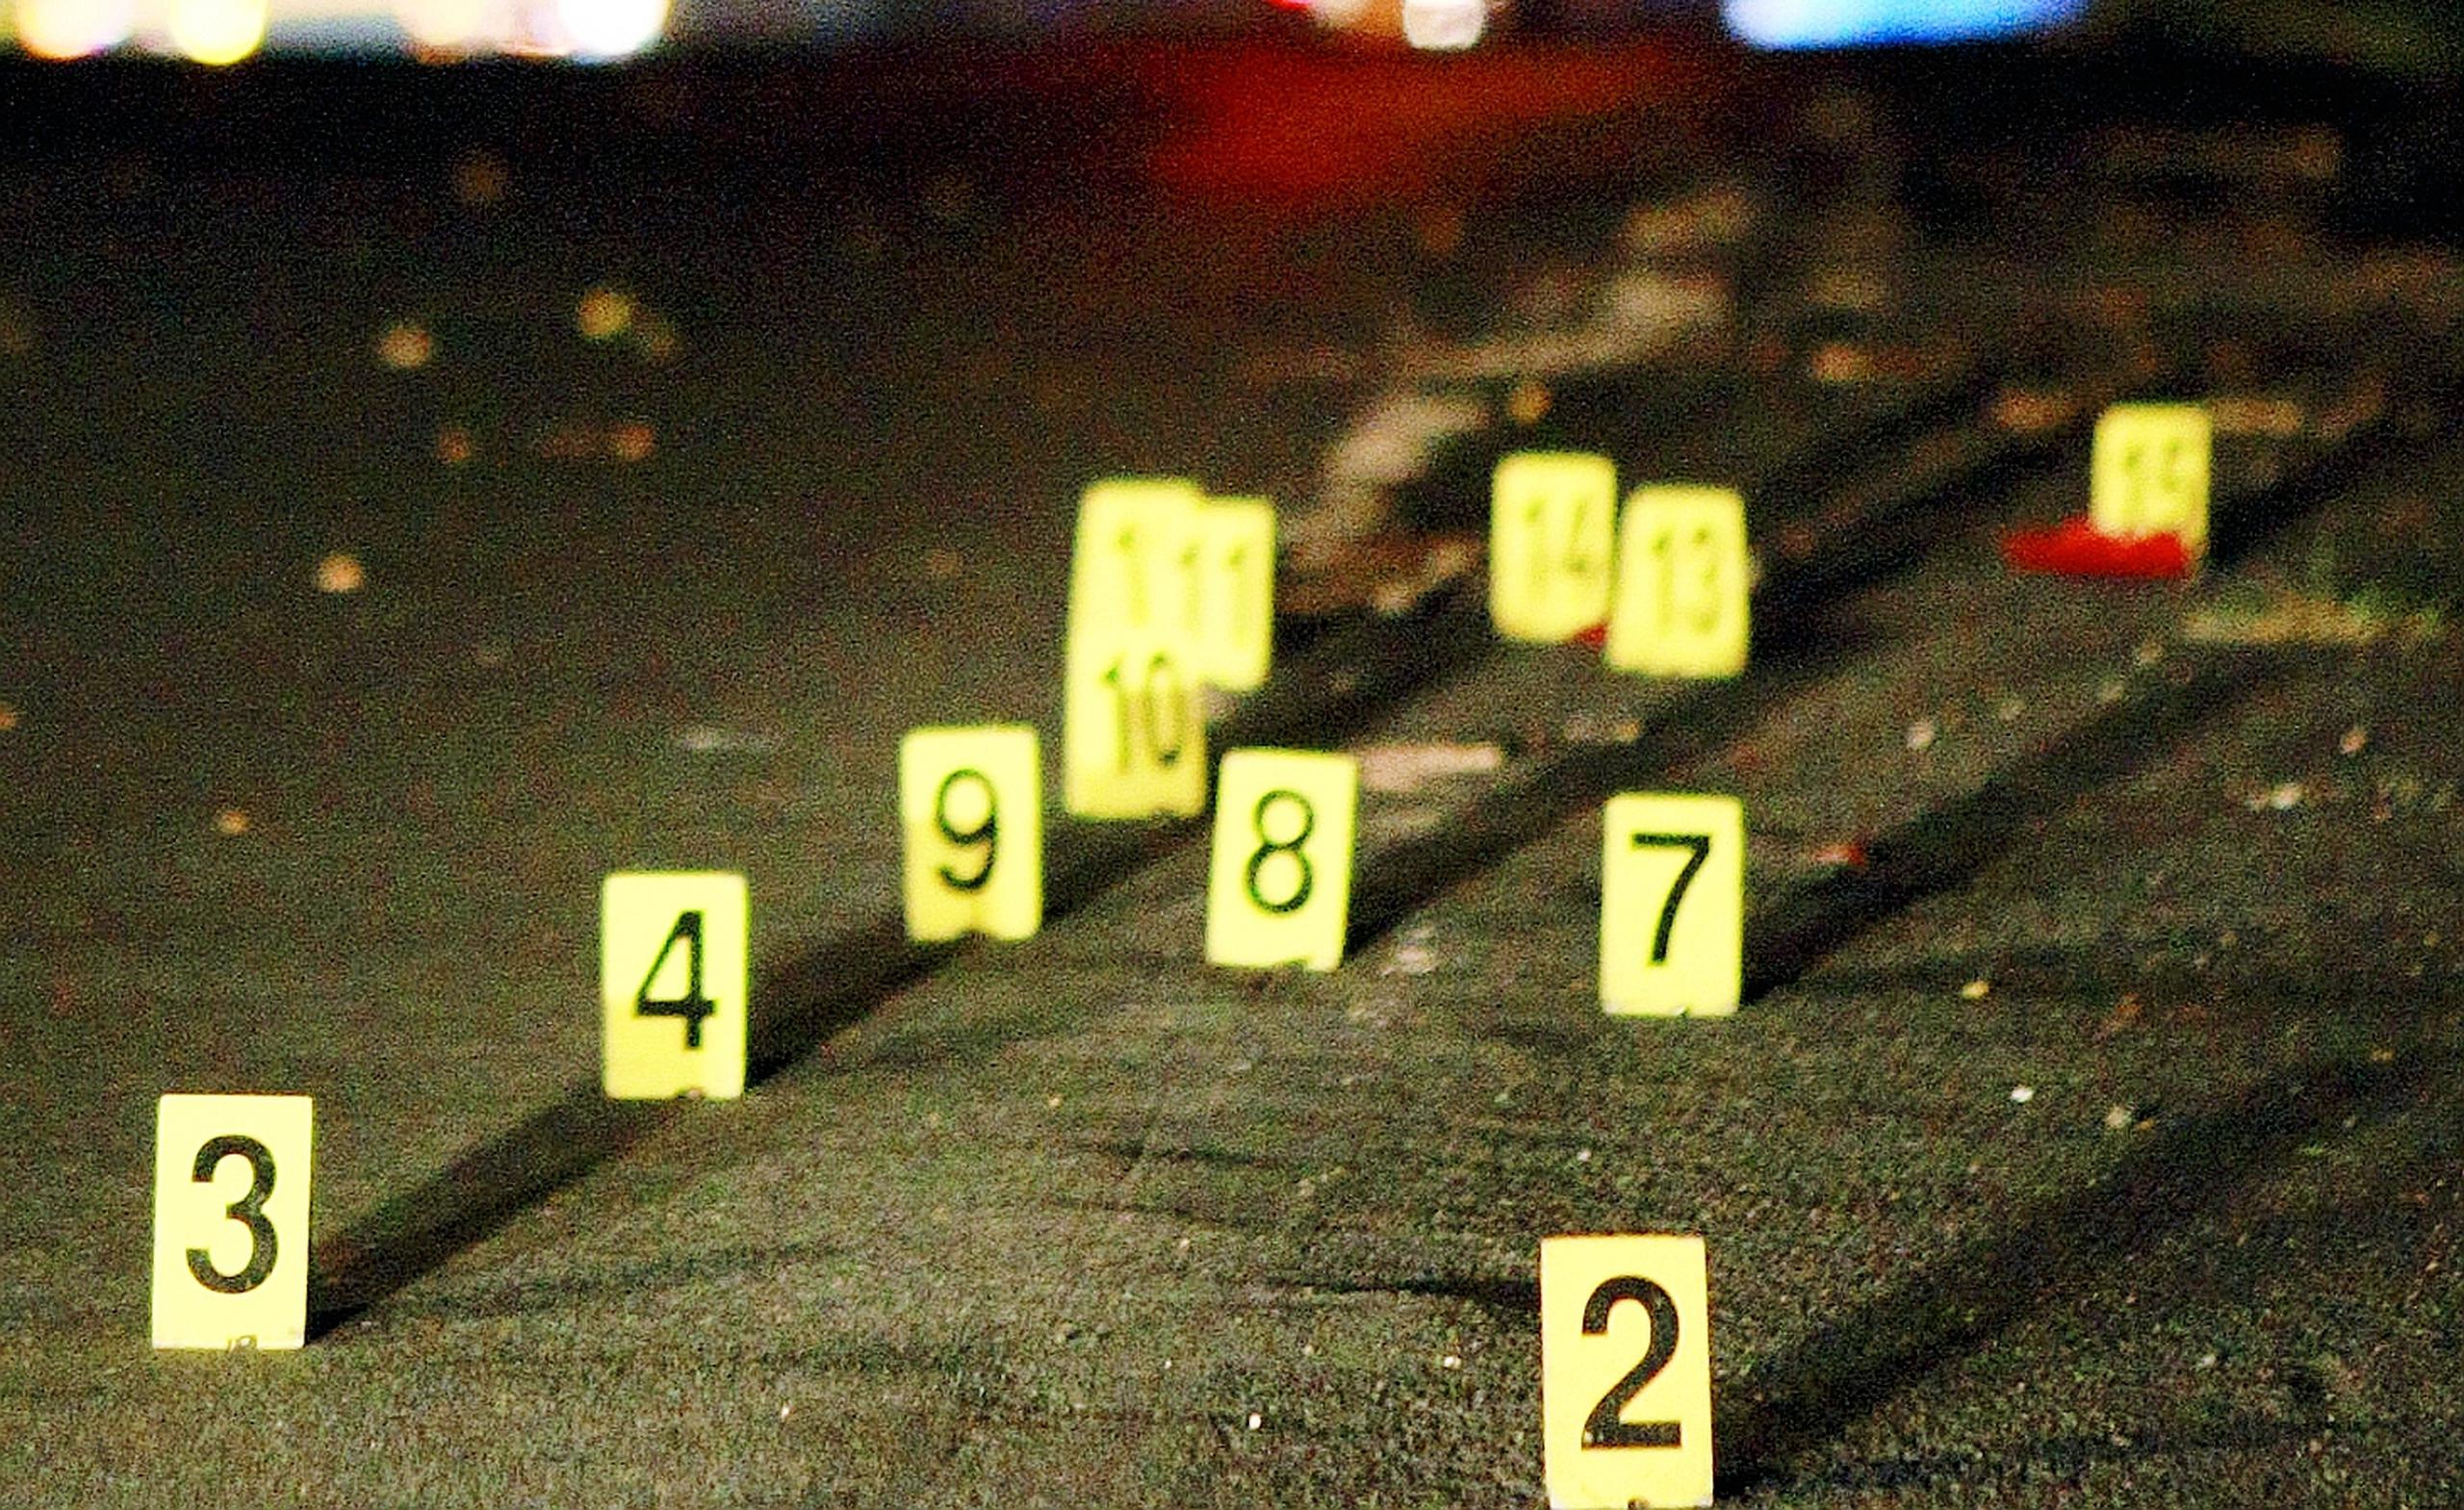 En la escena se ocuparon varios casquillos de bala calibre .40.